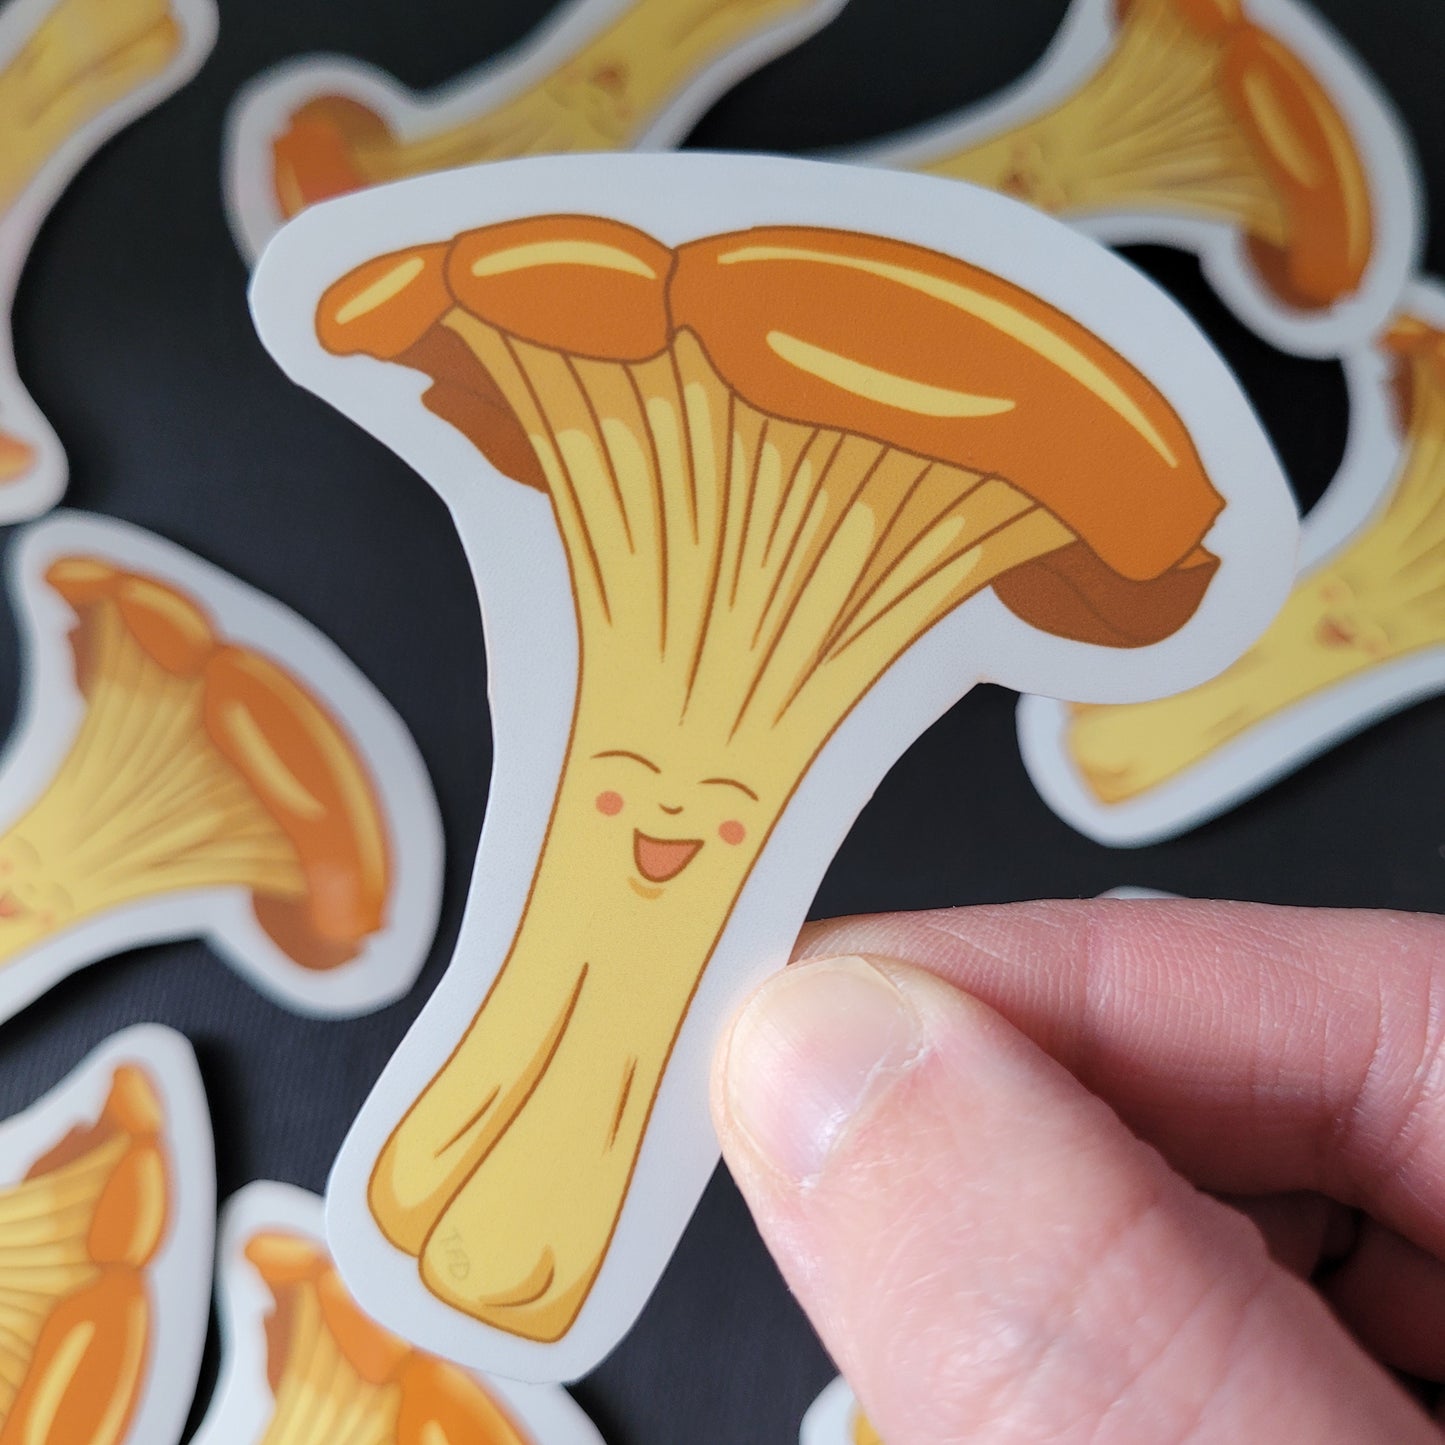 chanterelle mushroom sticker held between fingers